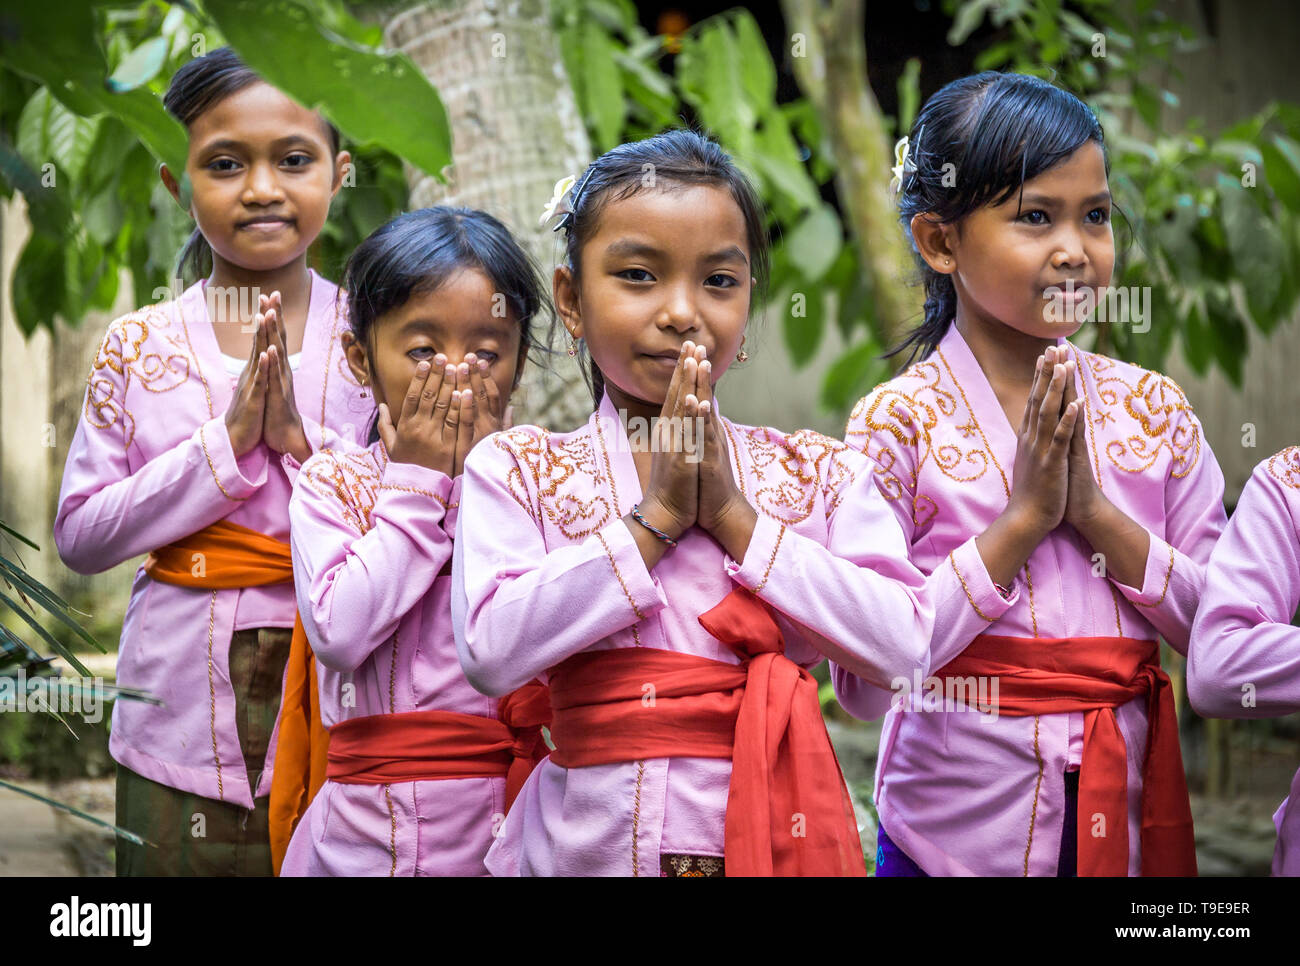 BALI, Indonesien - 25. APRIL 2018: die kleinen balinesischen Tänzer tragen schönen Outfits die Vorbereitung für eine Leistung auf die Insel Bali, Indonesien Stockfoto